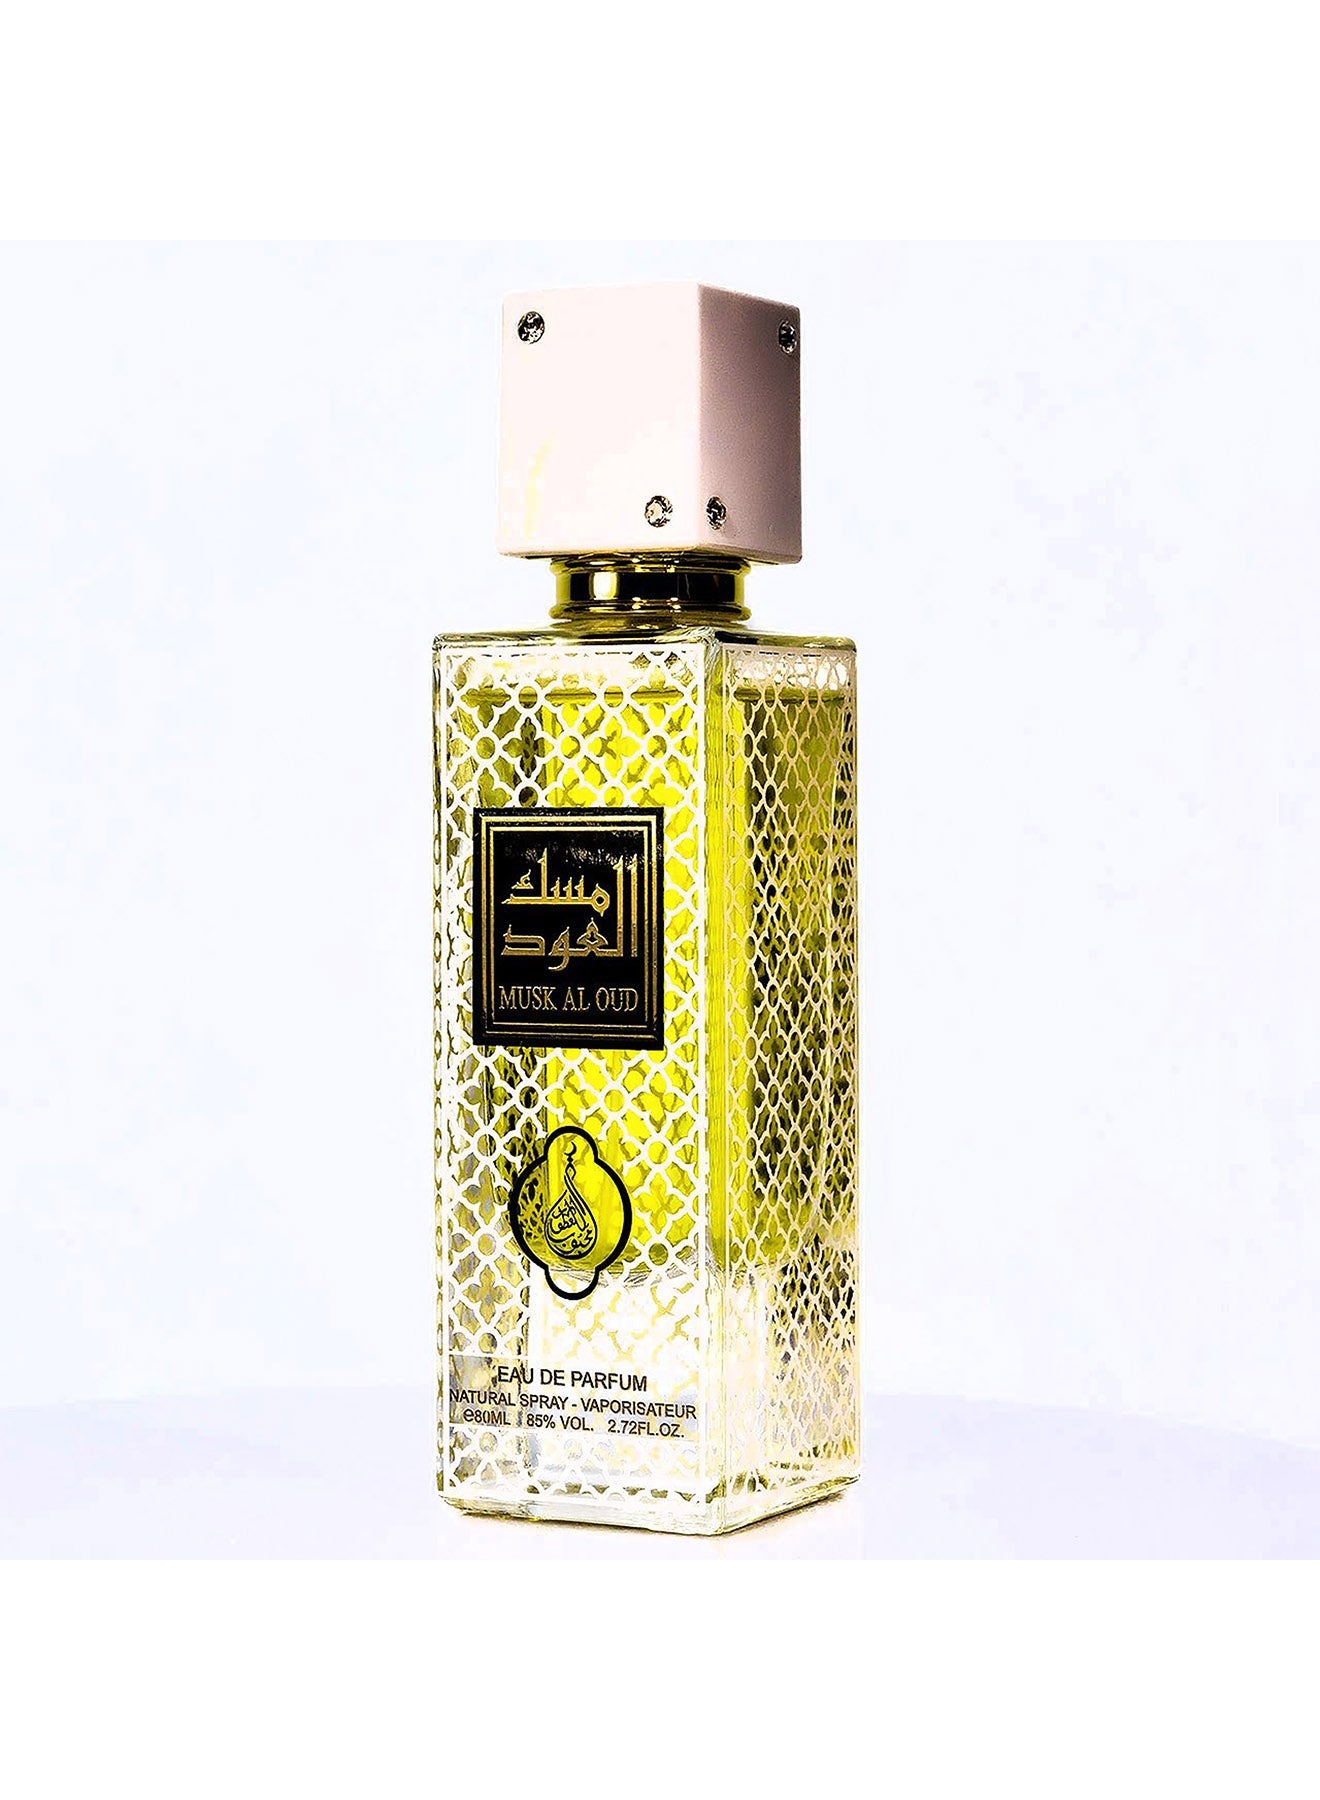 Musk Al Oud Original Eau De Parfume 80ml Value Pack of 2 